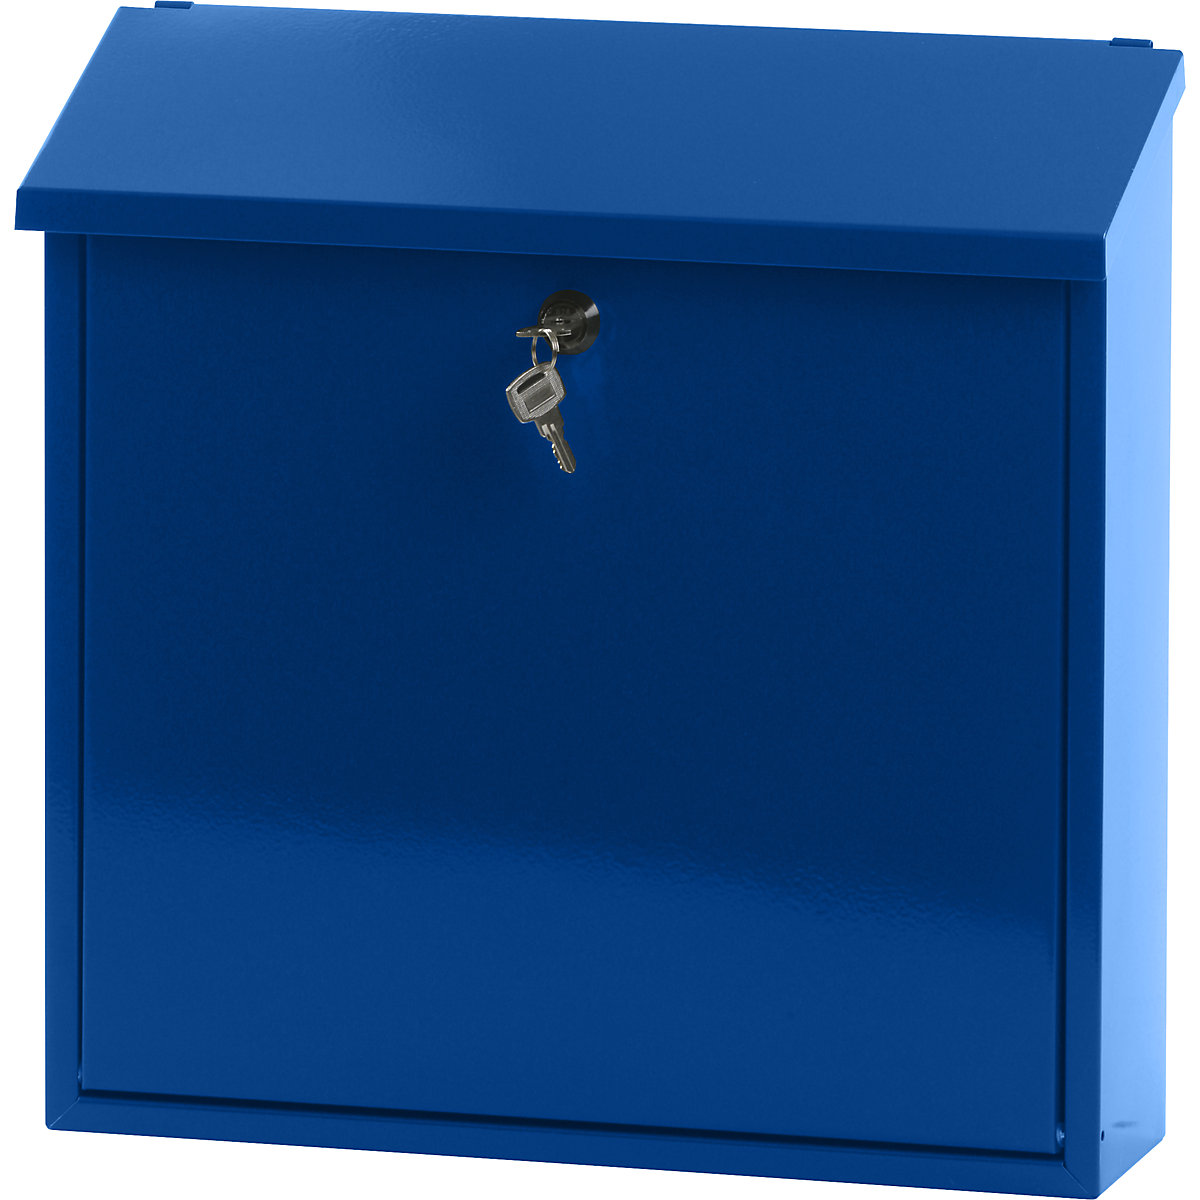 Poštanski sandučić, sa sklopivim ukošenim krovom, VxŠxD 370 x 370 x 115 mm, čelični lim, praškasto lakiran, u plavoj boji RAL 5005-6